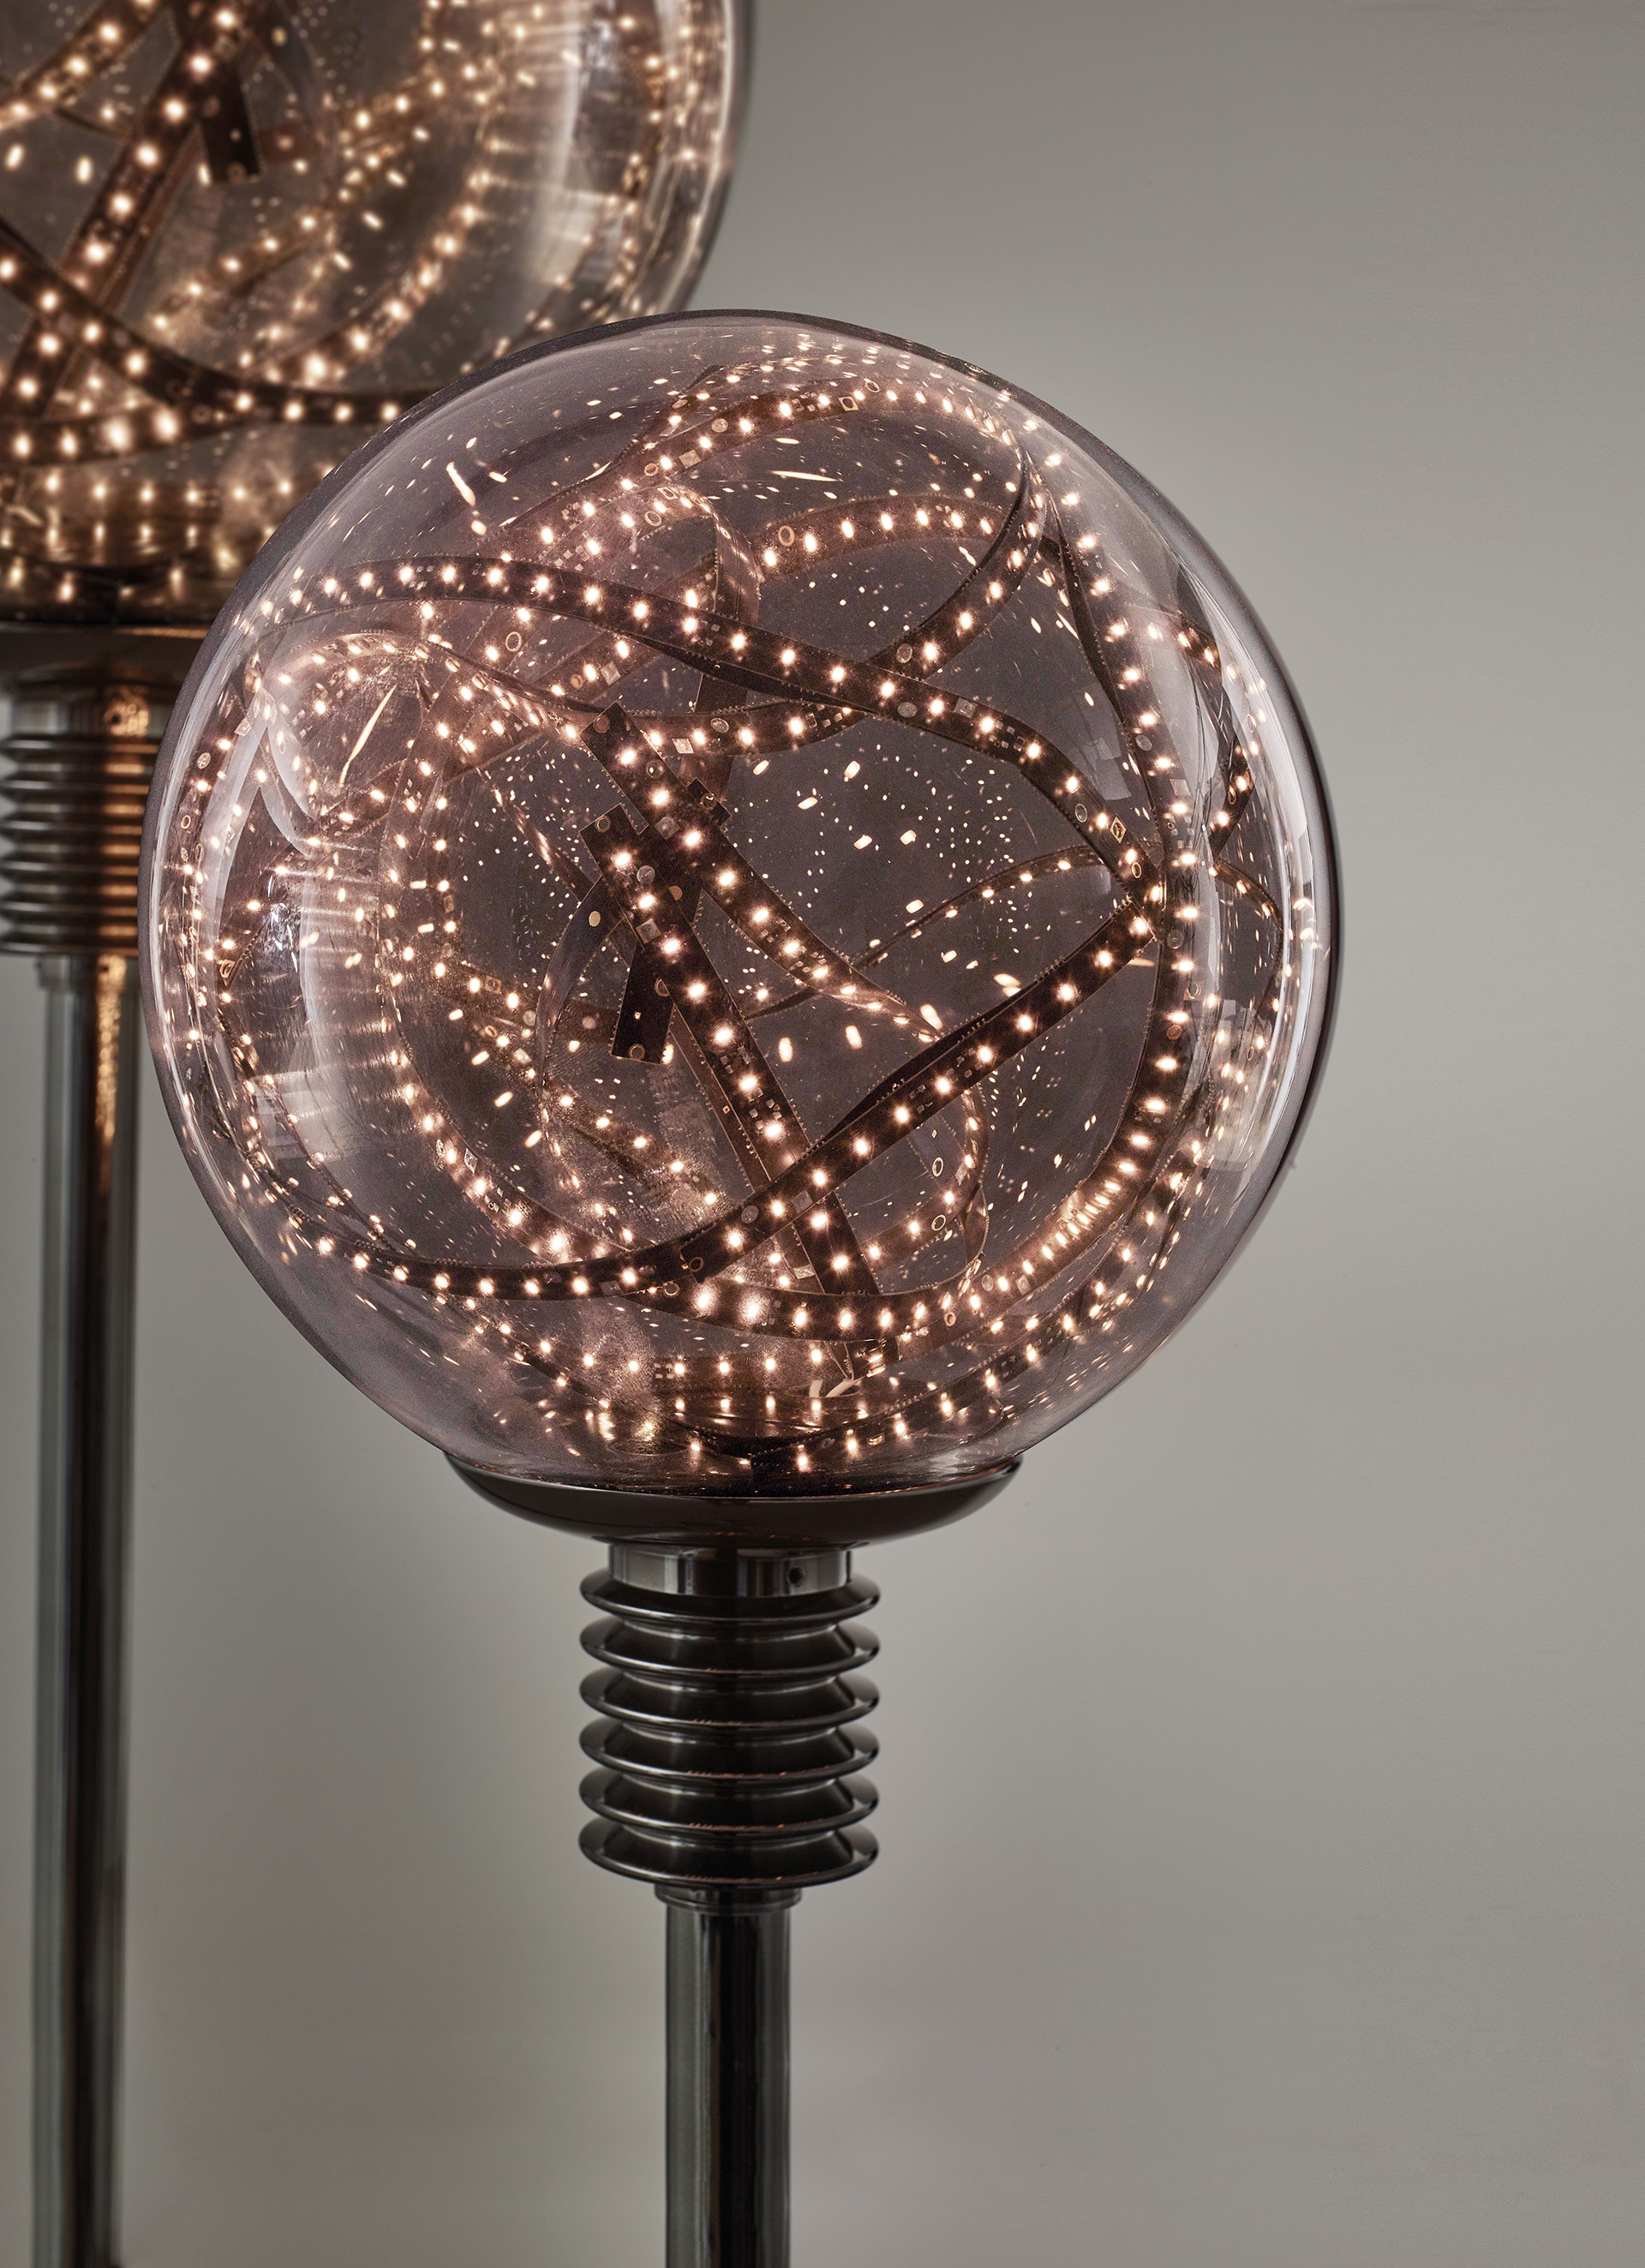 Higgs è una lampada da terra e da lettura a LED con struttura in metallo e diffusore in vetro di Murano disponibile in diversi colori, disegnata da Castiglioni, del catalogo di Promemoria | Promemoria